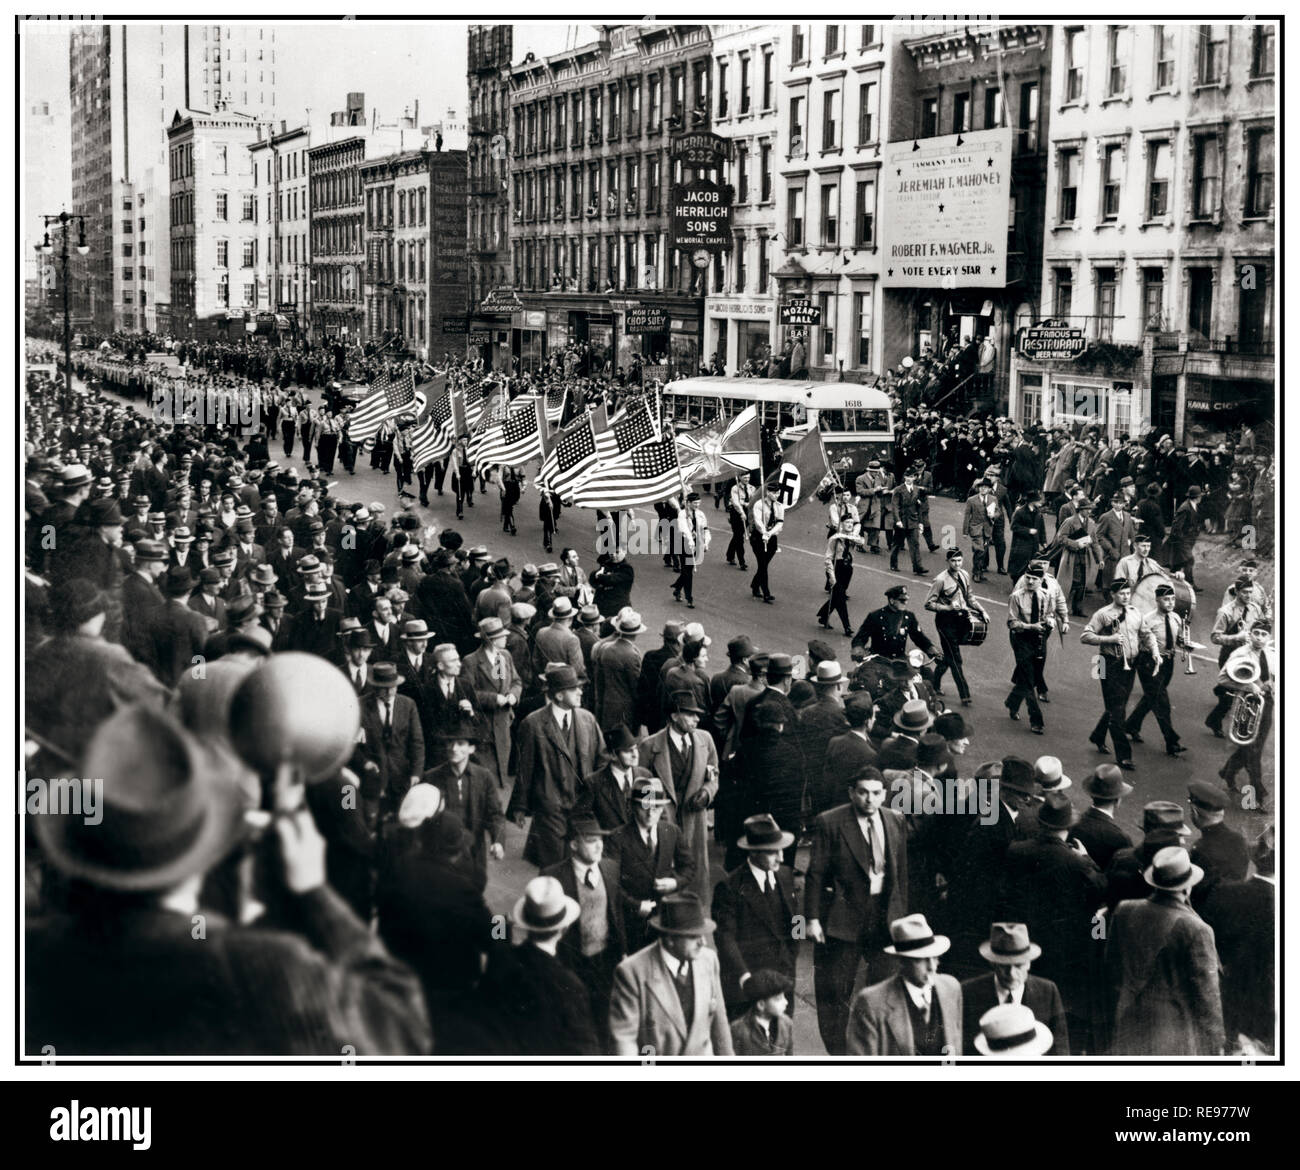 Archiv 1930 NSDAP-Sympathisanten marschieren mit Stars und Stripes Fahnen und NS-Hakenkreuz Fahnen auf einer Kundgebung in New York USA gab es amerikanischen NS-Sommercamps rechts überqueren sie die USA in den 1930er Jahren Stockfoto